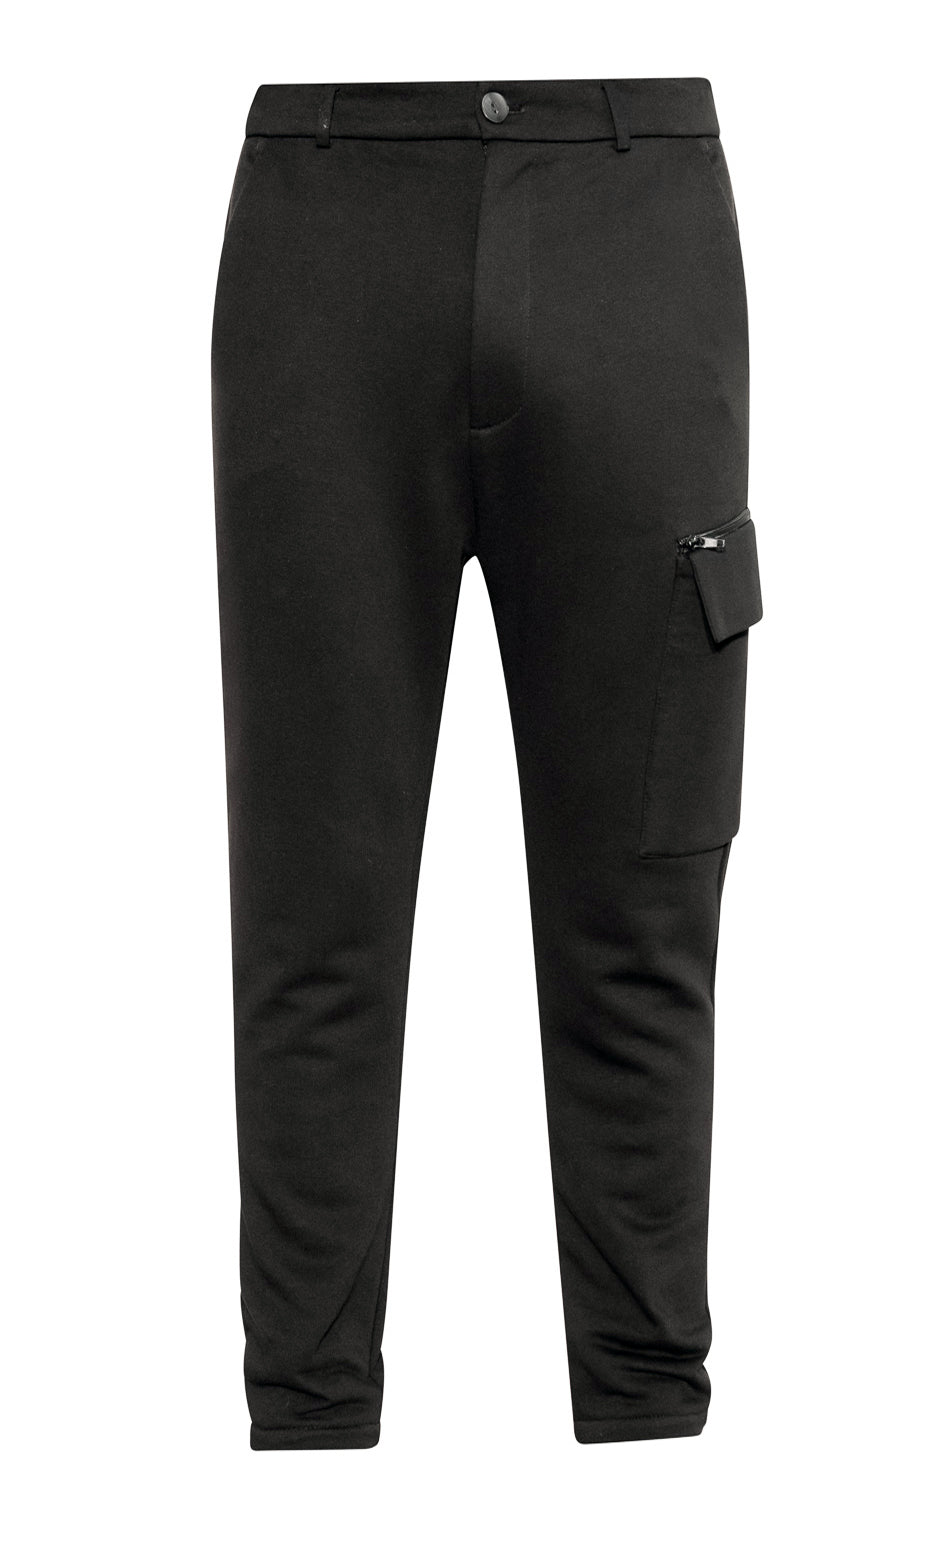 adddress MP46J pants with side pocket